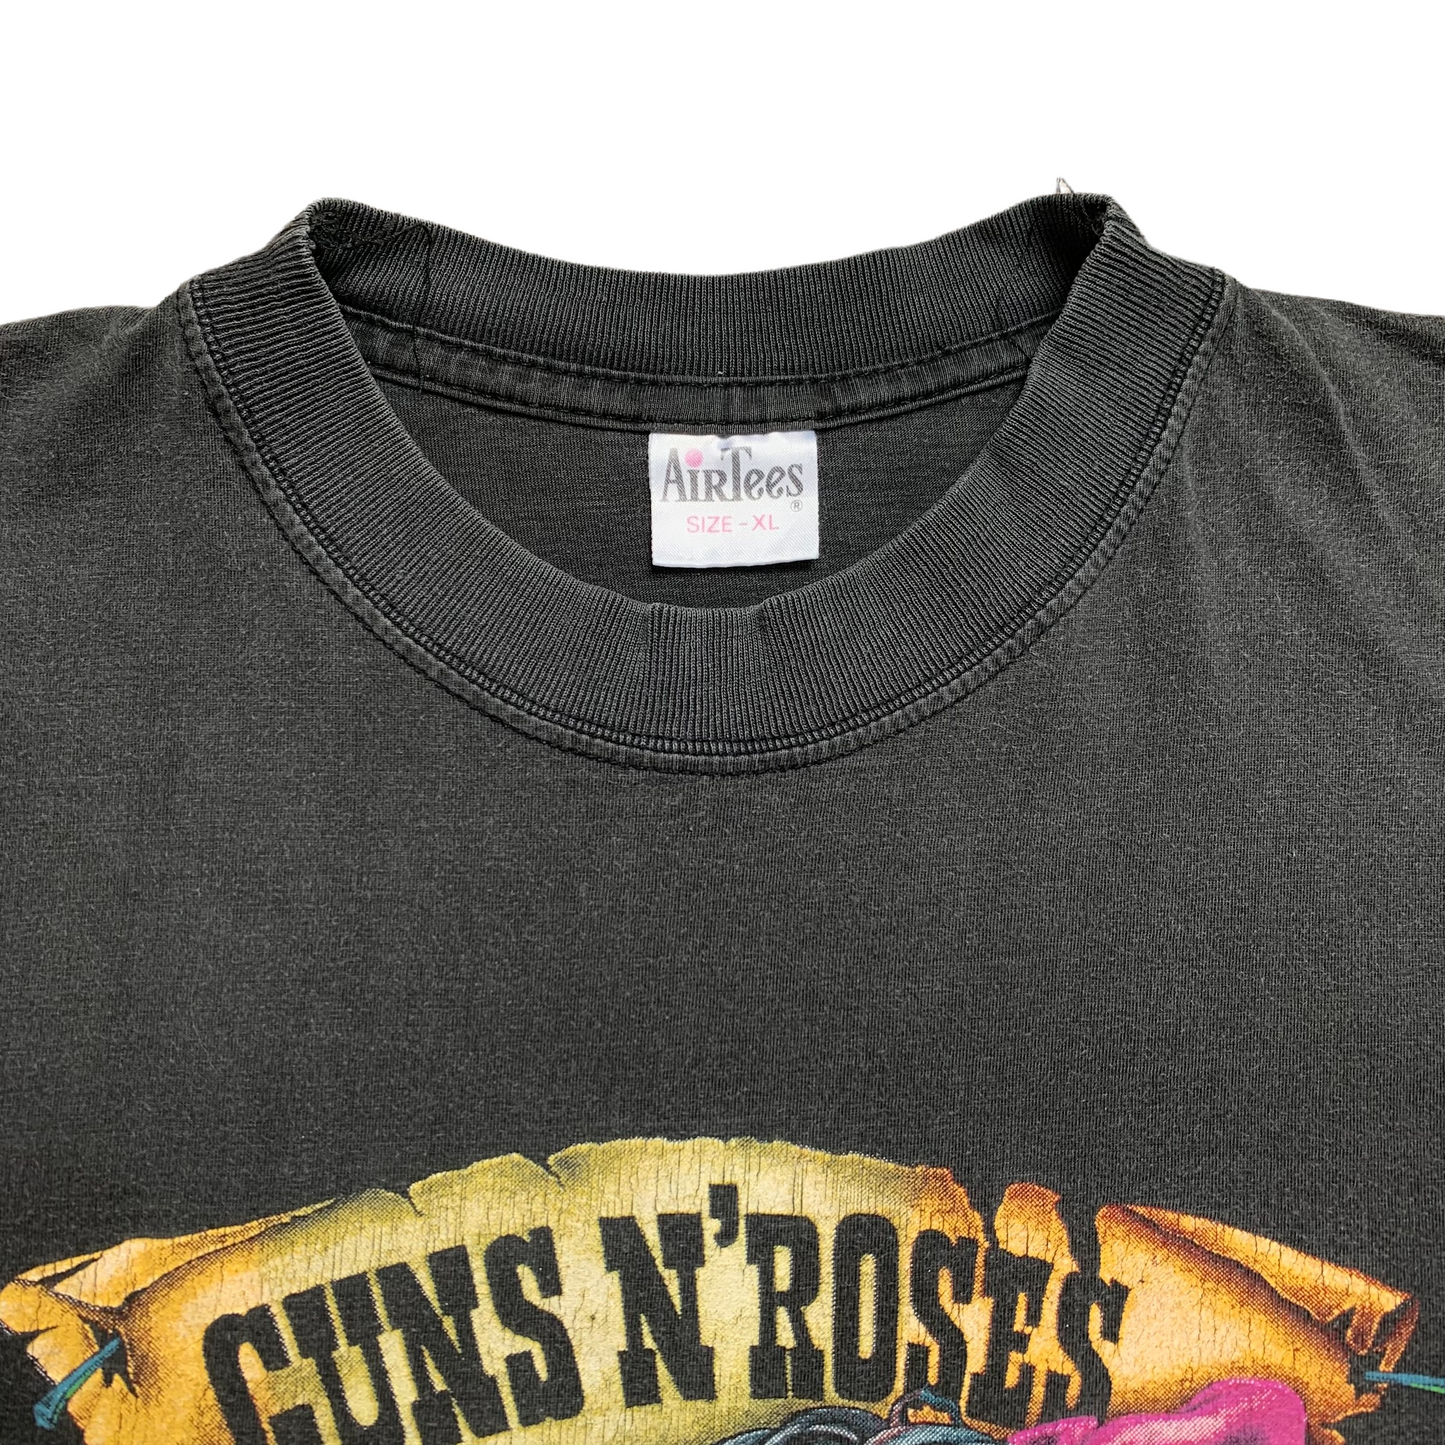 Early 90s Guns N Roses (L/XL)